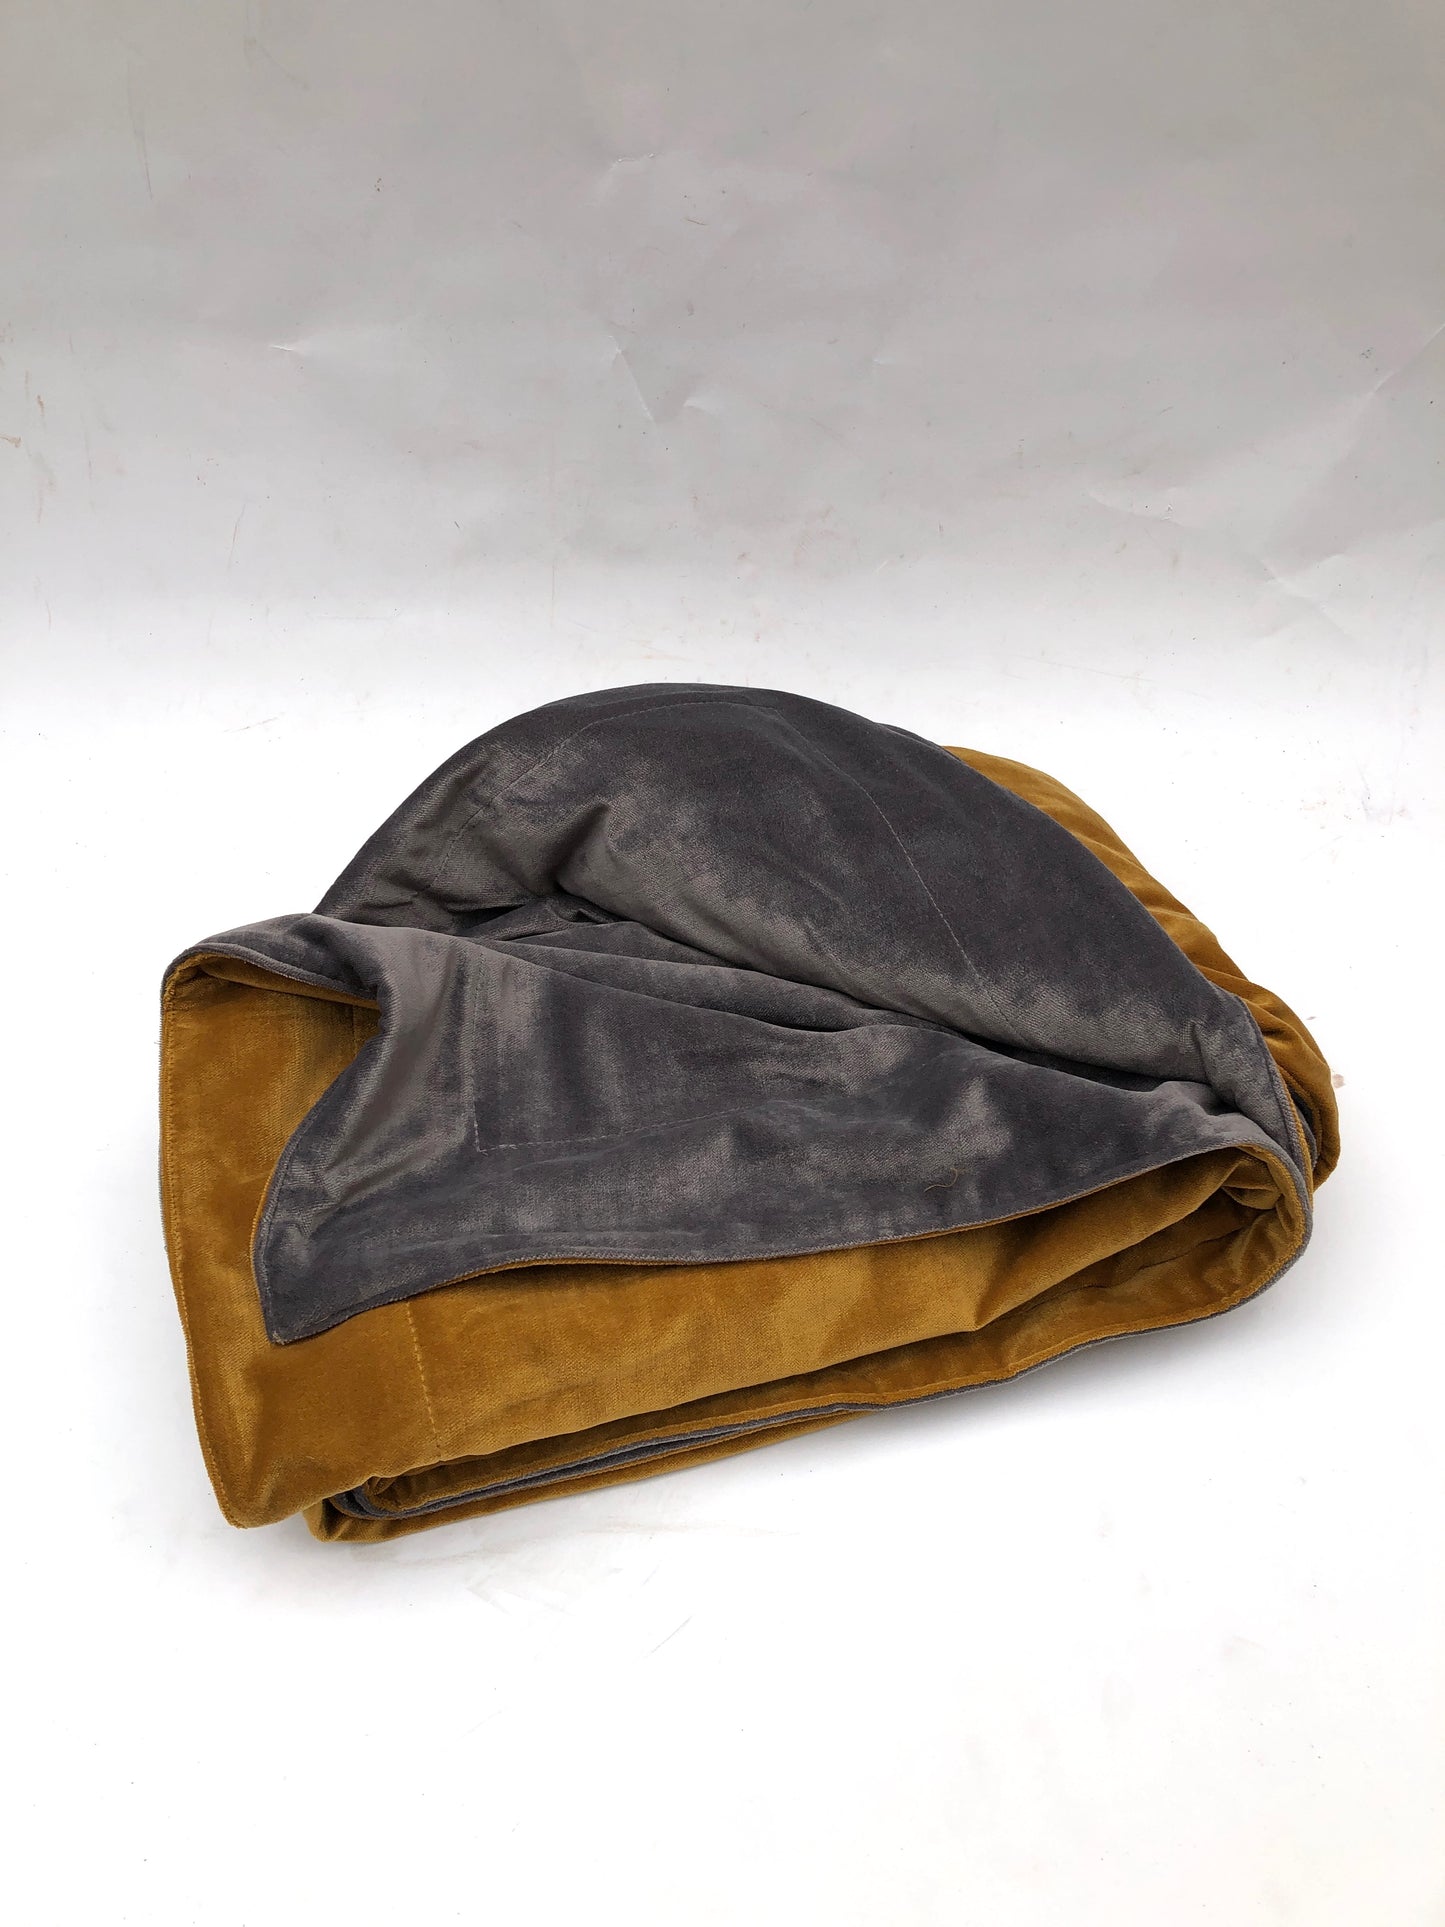 Fabric, Velvet Blanket, 298x132cm, Yellow/Grey - 3.42kg